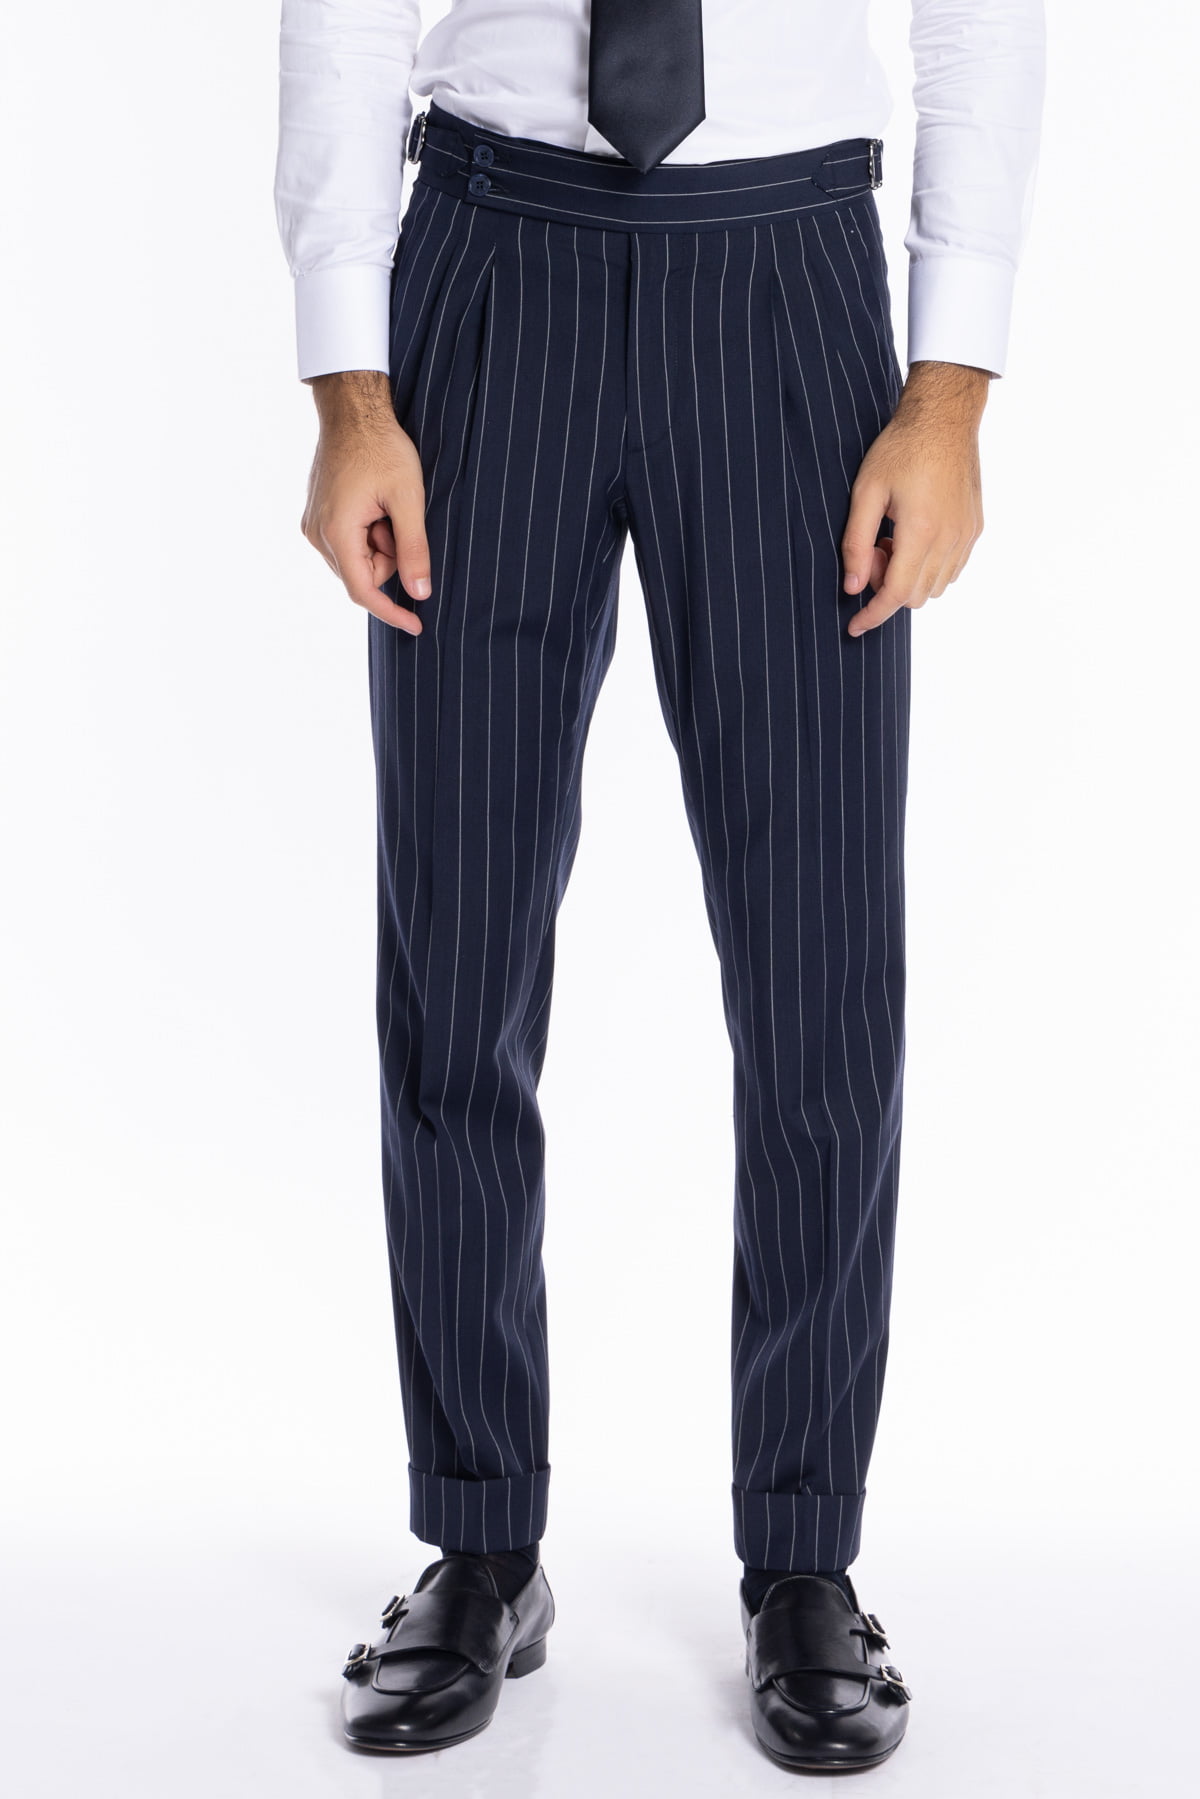 Pantalone uomo blu gessato vita alta tasca america in fresco lana misto con doppia pinces e fibbie laterali regolabili